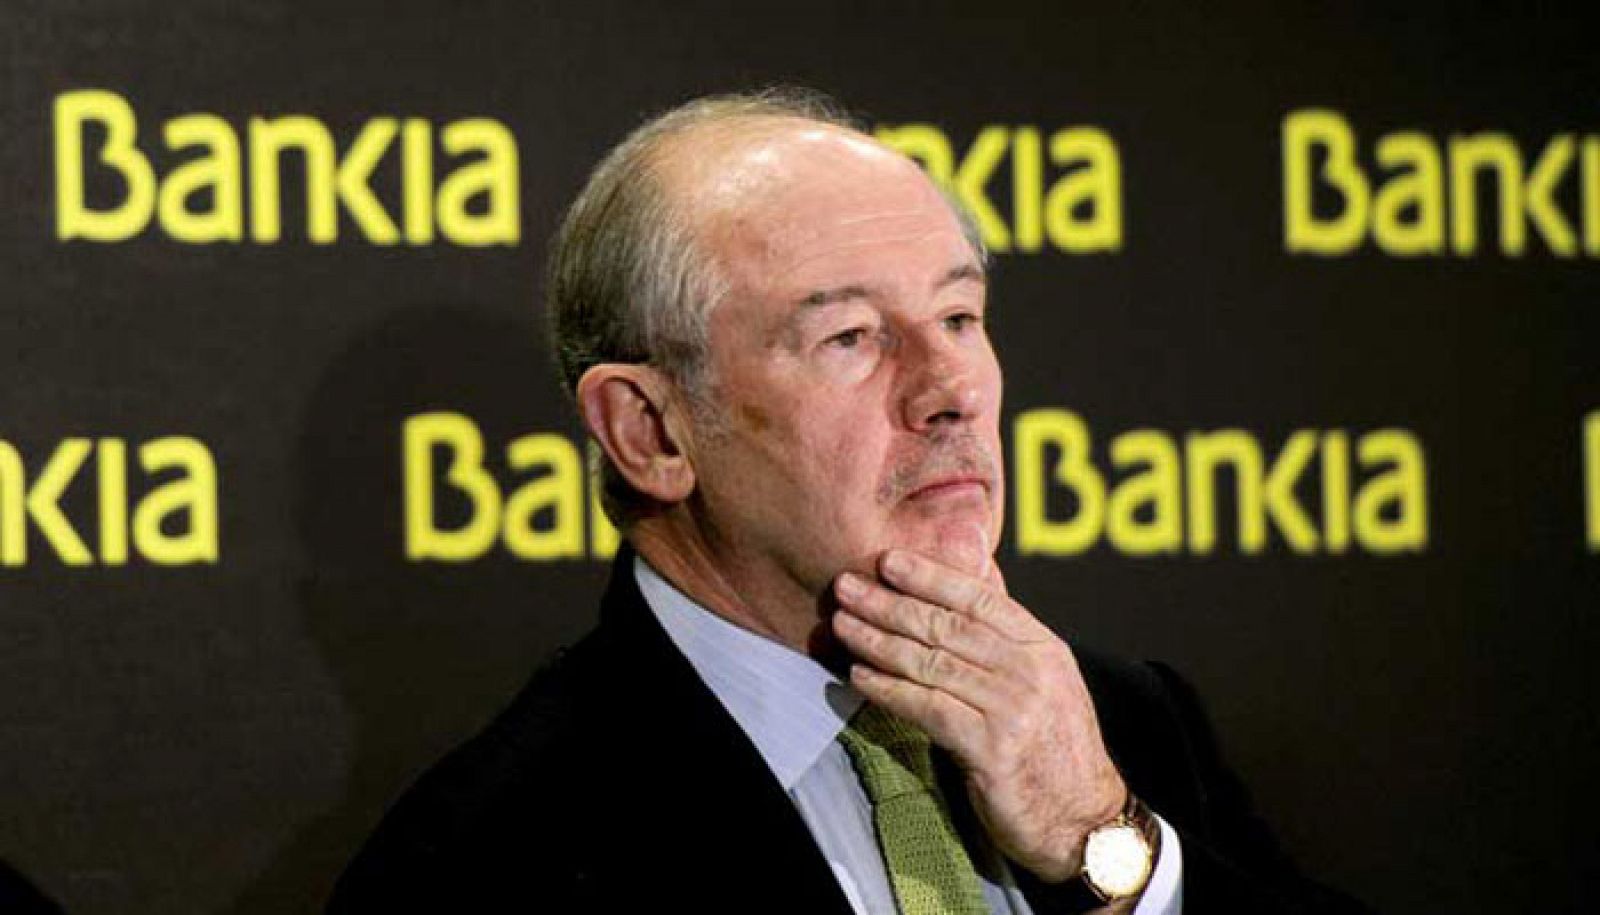 Rodrigo Rato renuncia a su indemnización tras dimitir en Bankia